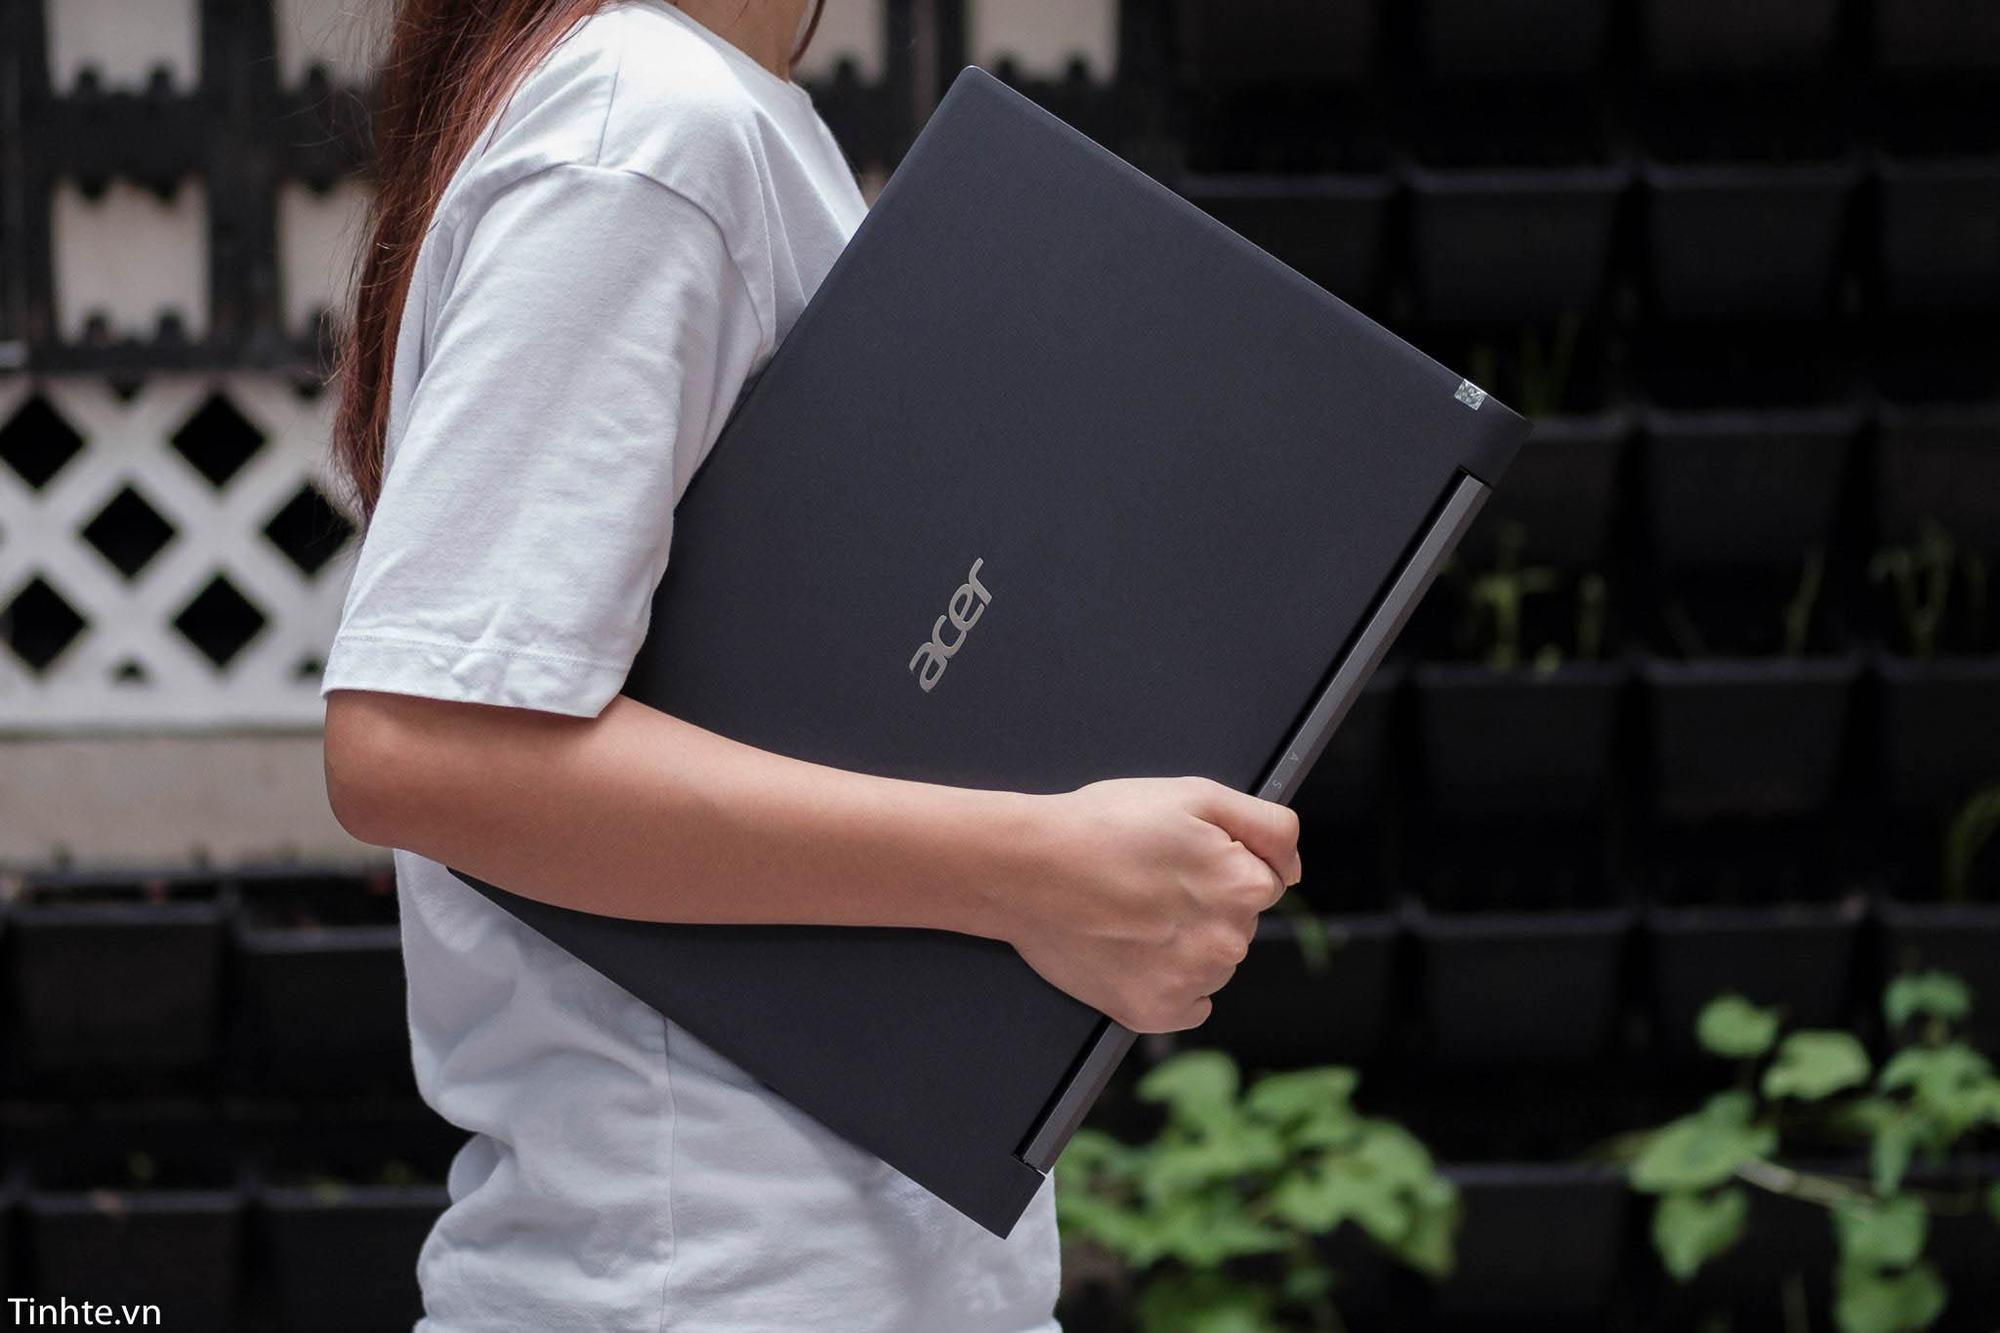 Laptop Acer gaming: “Học cực mê - chơi cực đã” lựa chọn lý tưởng cho các bạn sinh viên - Ảnh 2.